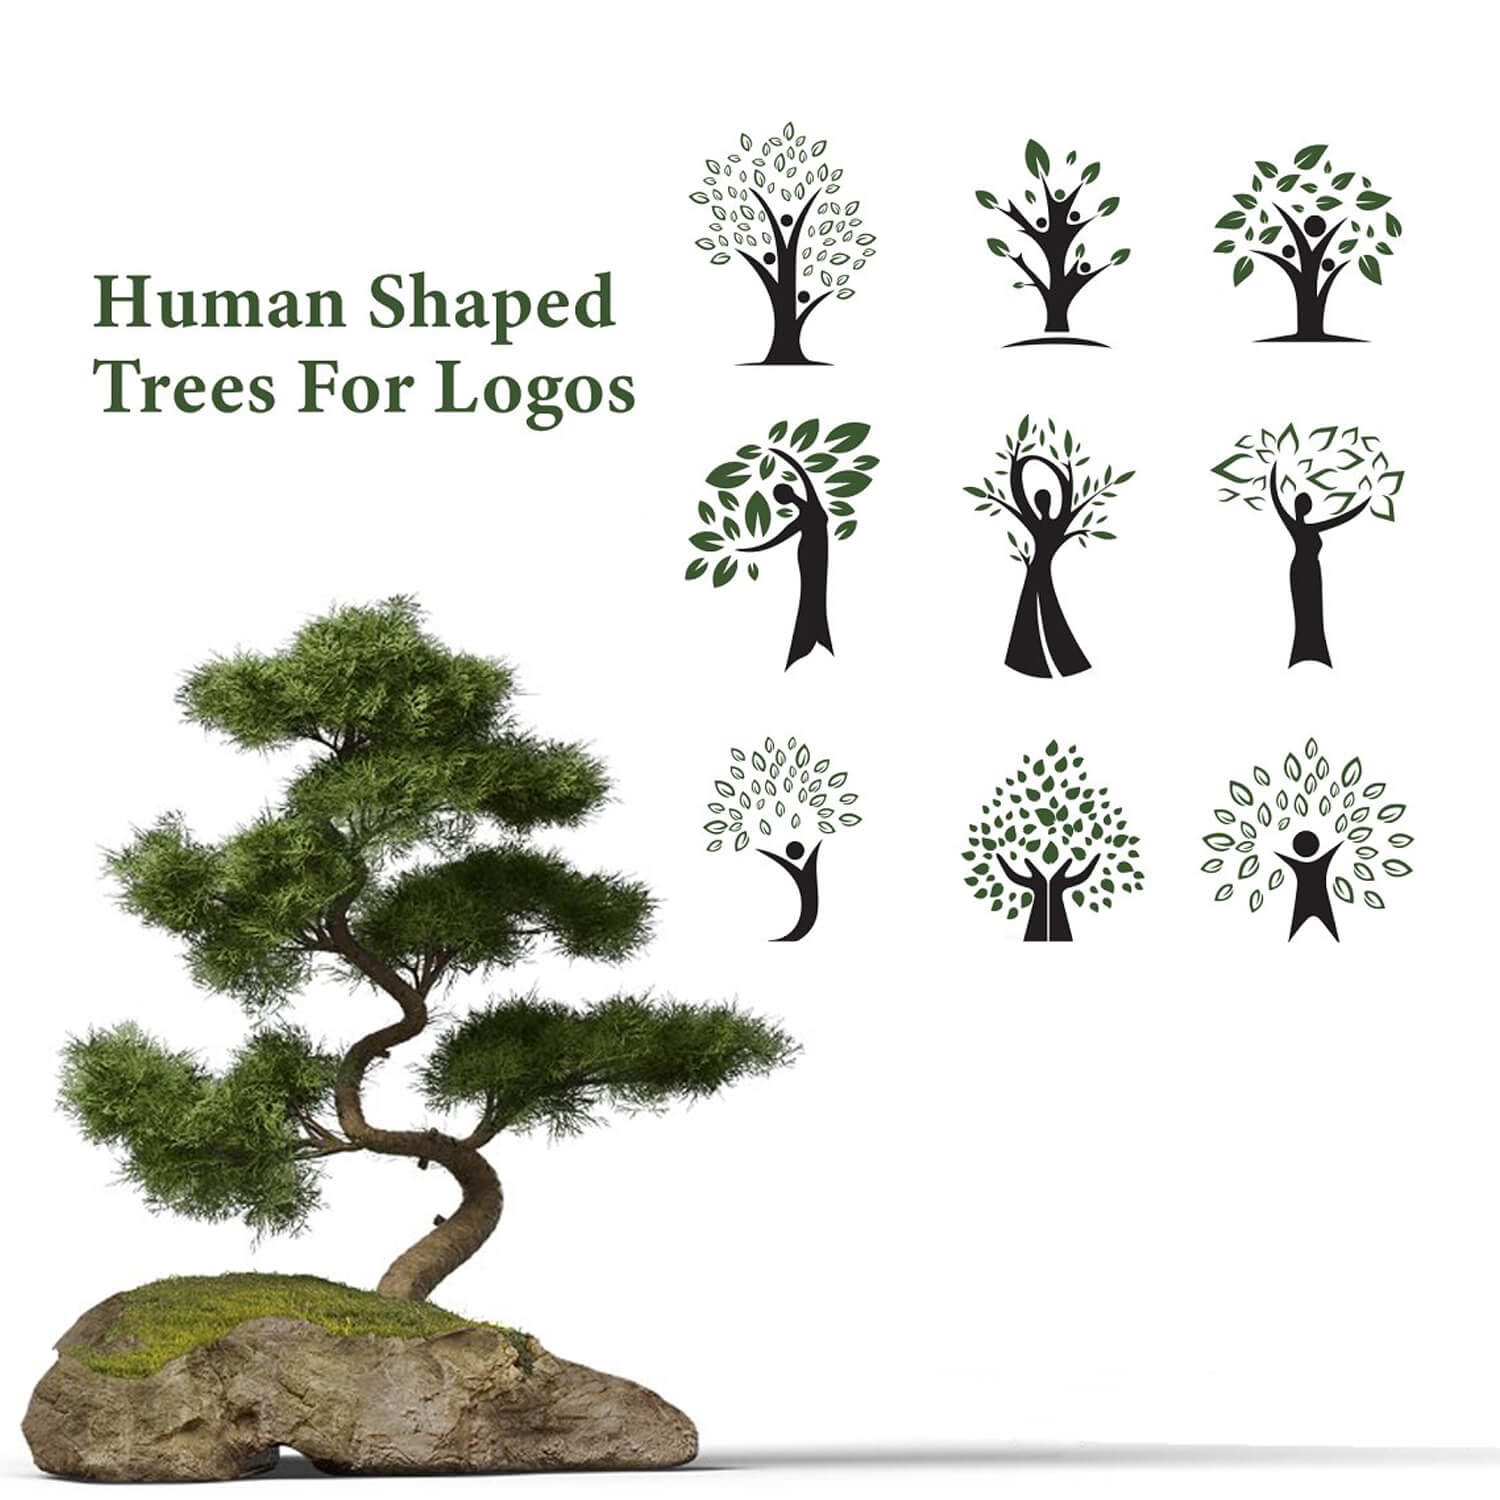 Nine variants of human shaped trees.